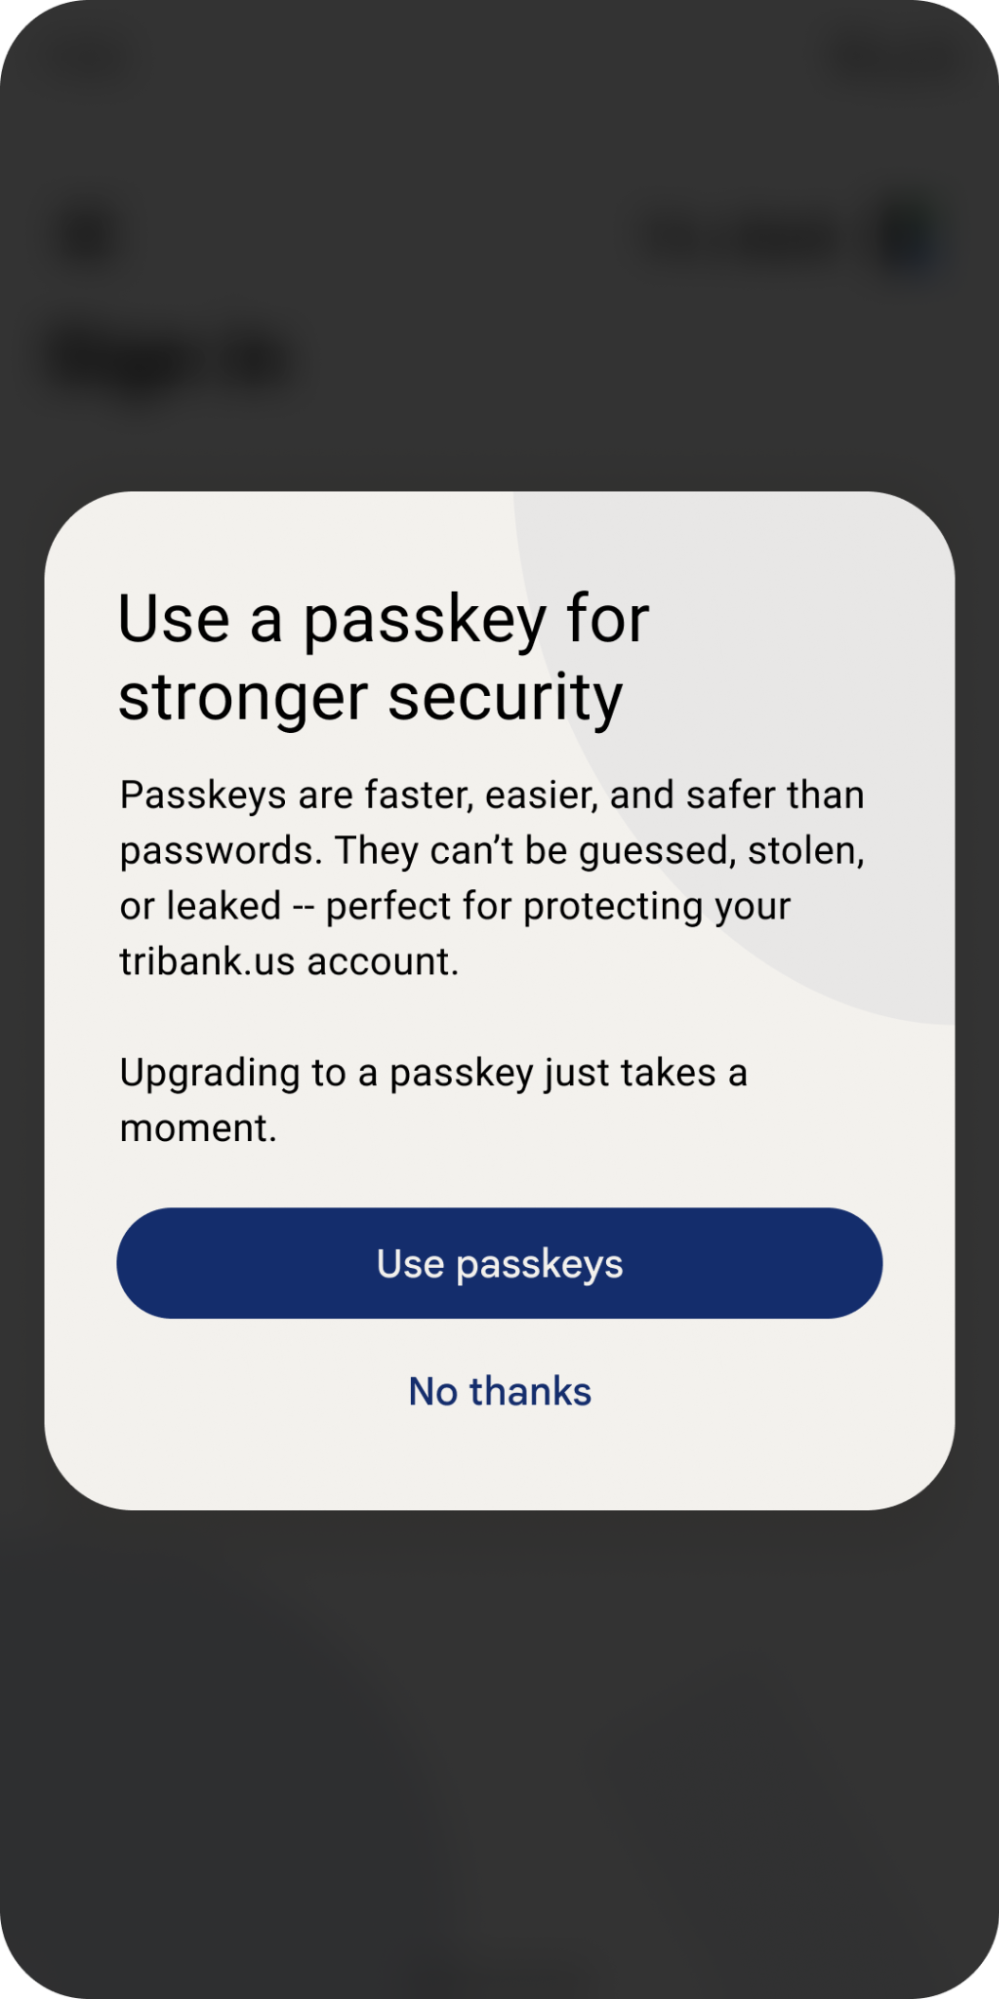 Cửa sổ bật lên mời người dùng sử dụng khoá truy cập để có mật khẩu nhanh hơn và an toàn hơn